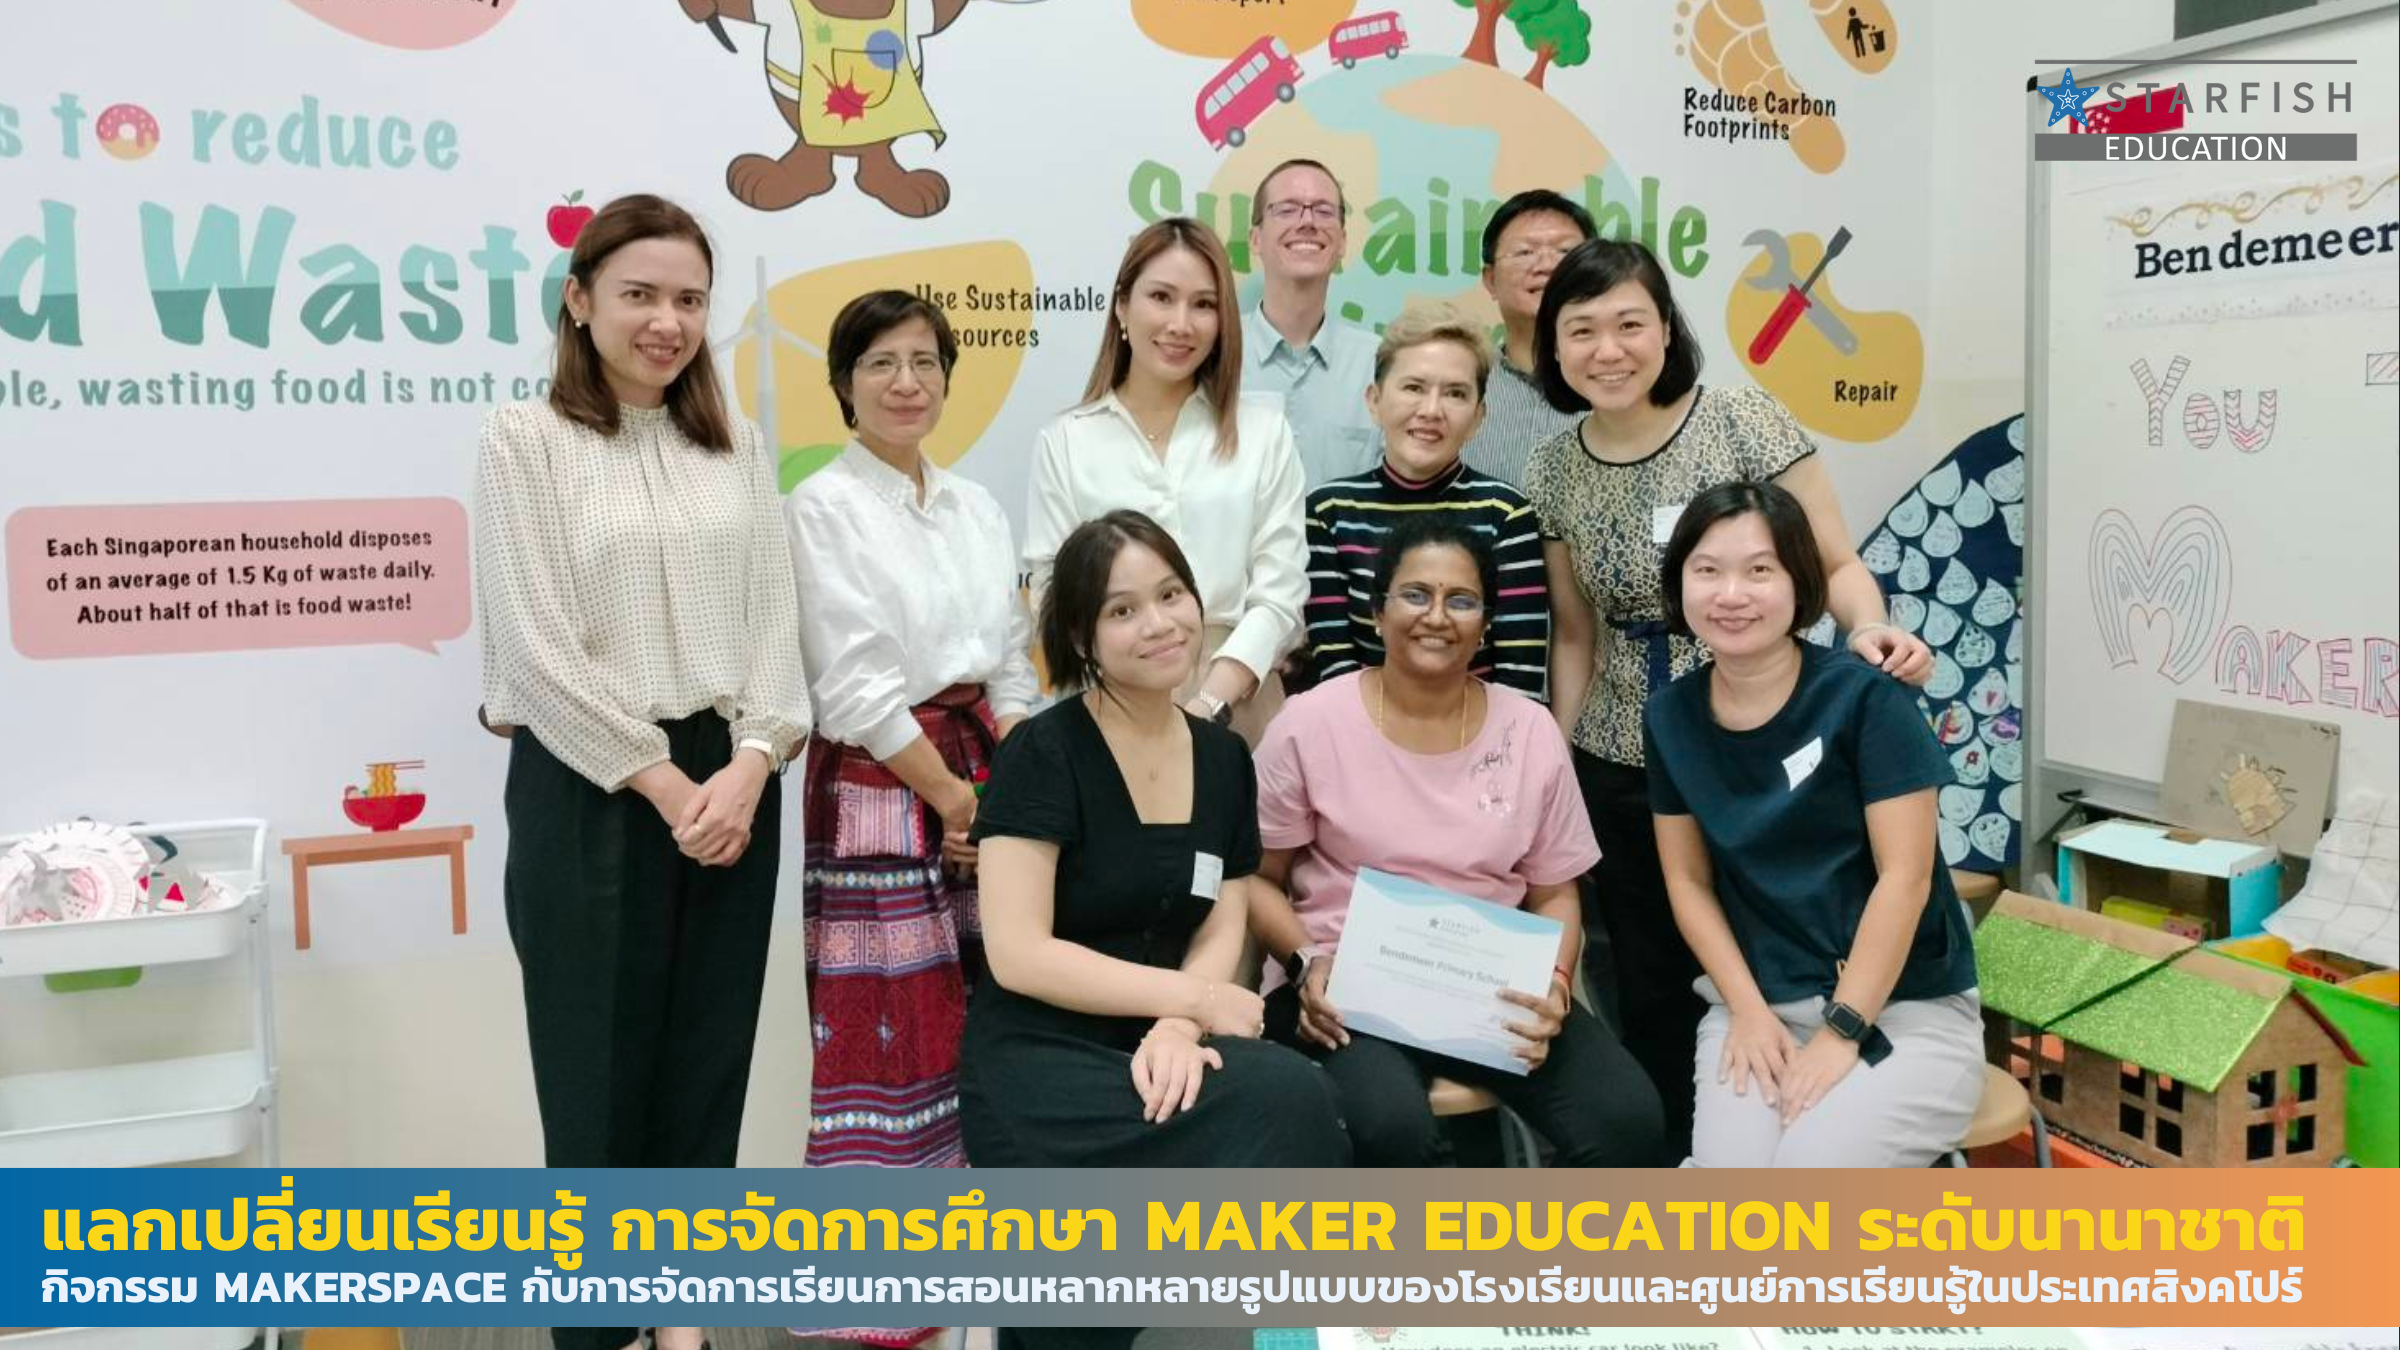 แลกเปลี่ยนเรียนรู้ การจัดการศึกษา Maker Education ระดับนานาชาติ